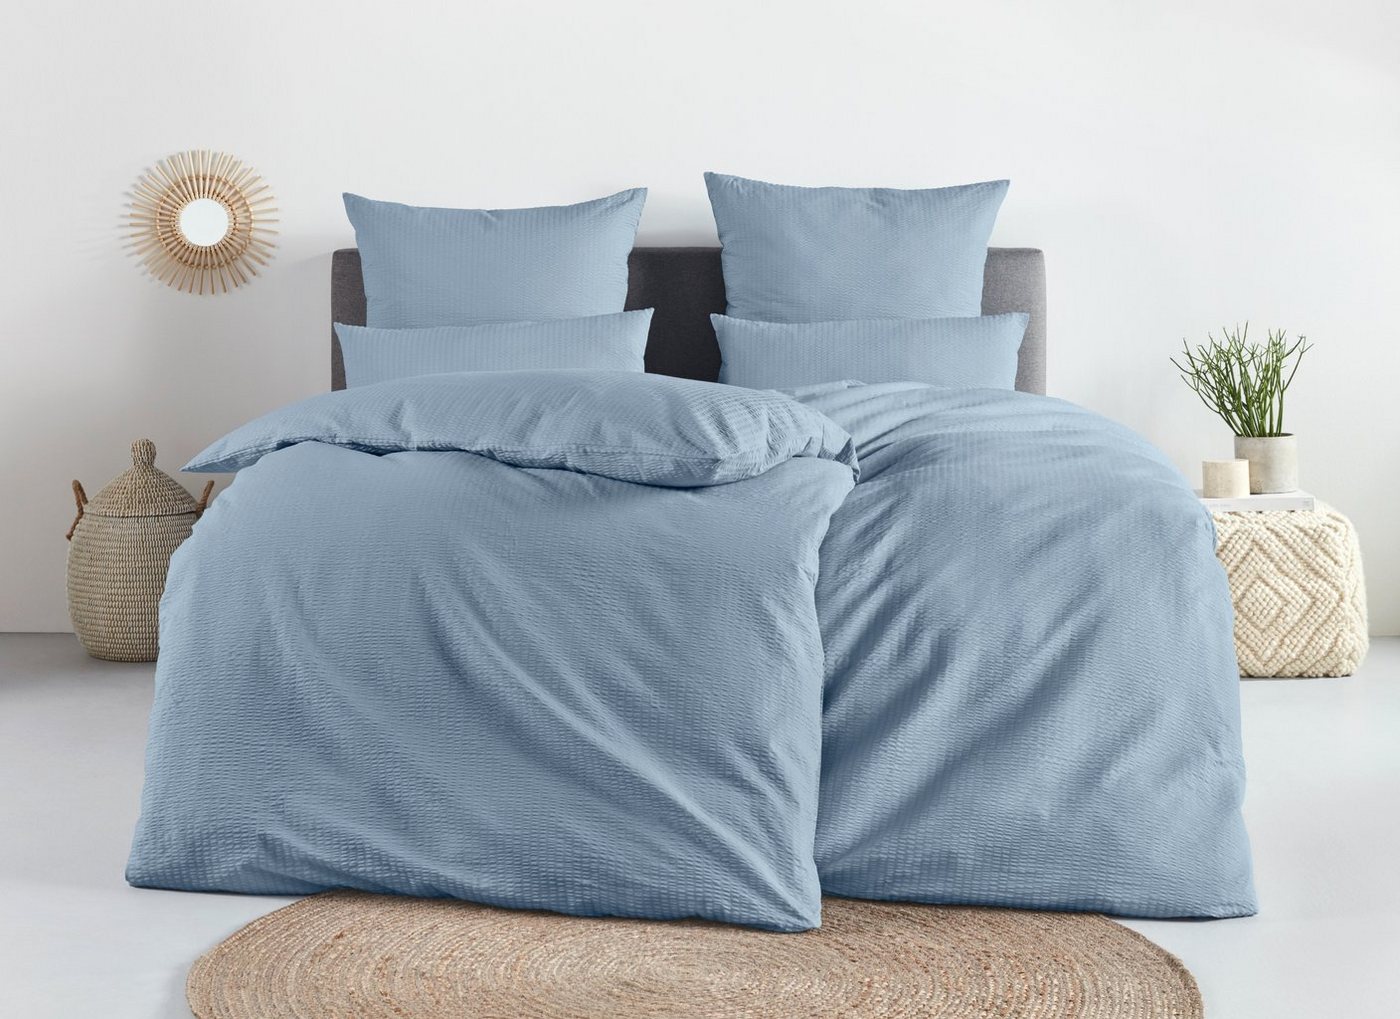 Bettwäsche Sari2 in Gr. 135x200 oder 155x220 cm, andas, Seersucker, 2 teilig, aus Baumwolle, uni Bettwäsche in Seersucker Qualität ideal für Sommer von andas